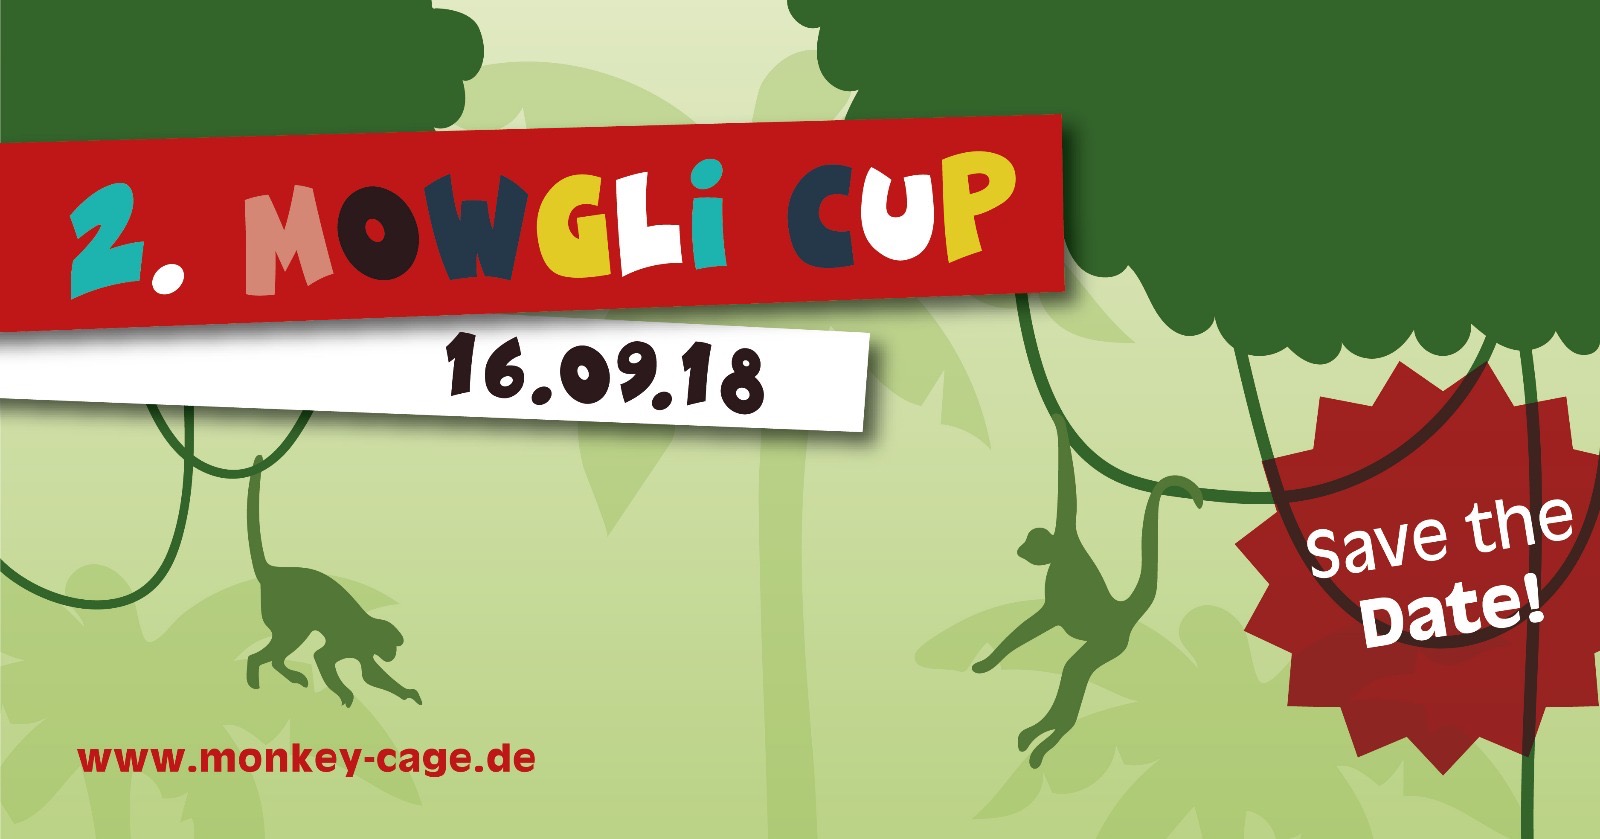 2. Mowgli Cup 2018 – KidsFUN Cup